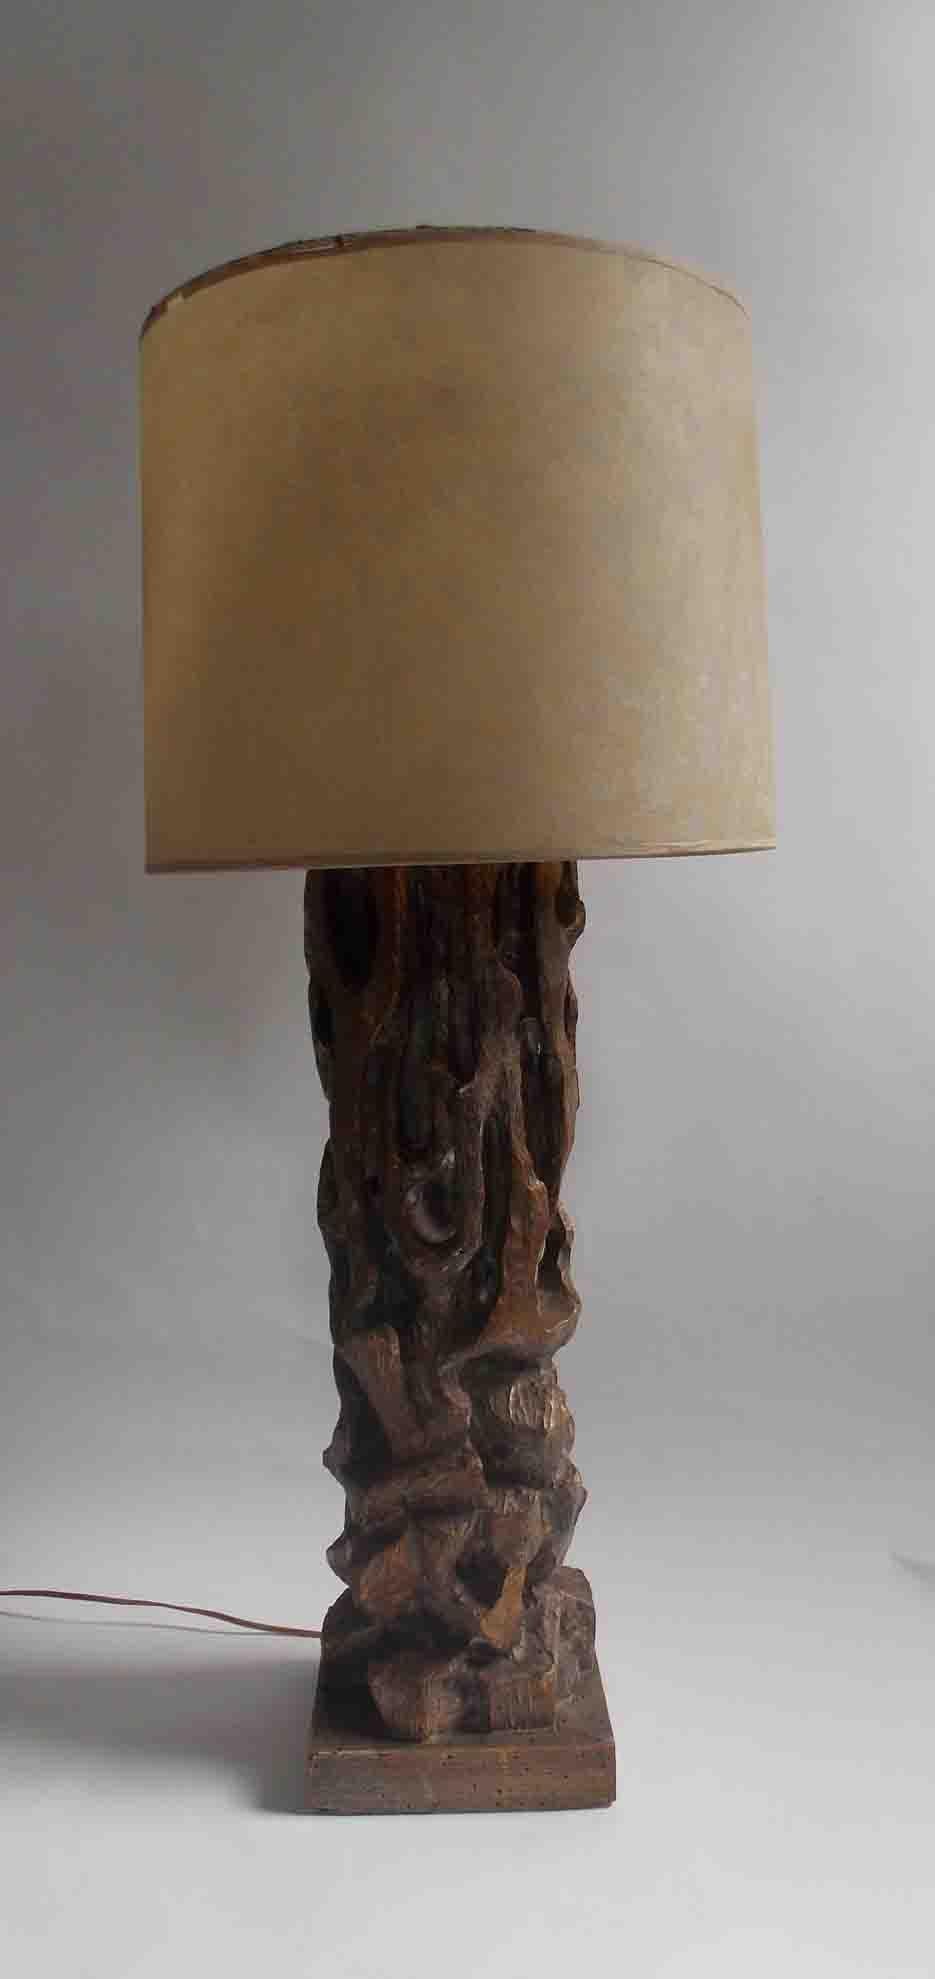 Lampe de table à grande échelle.
Surface sculptée et dorée.
Ombre de la période.